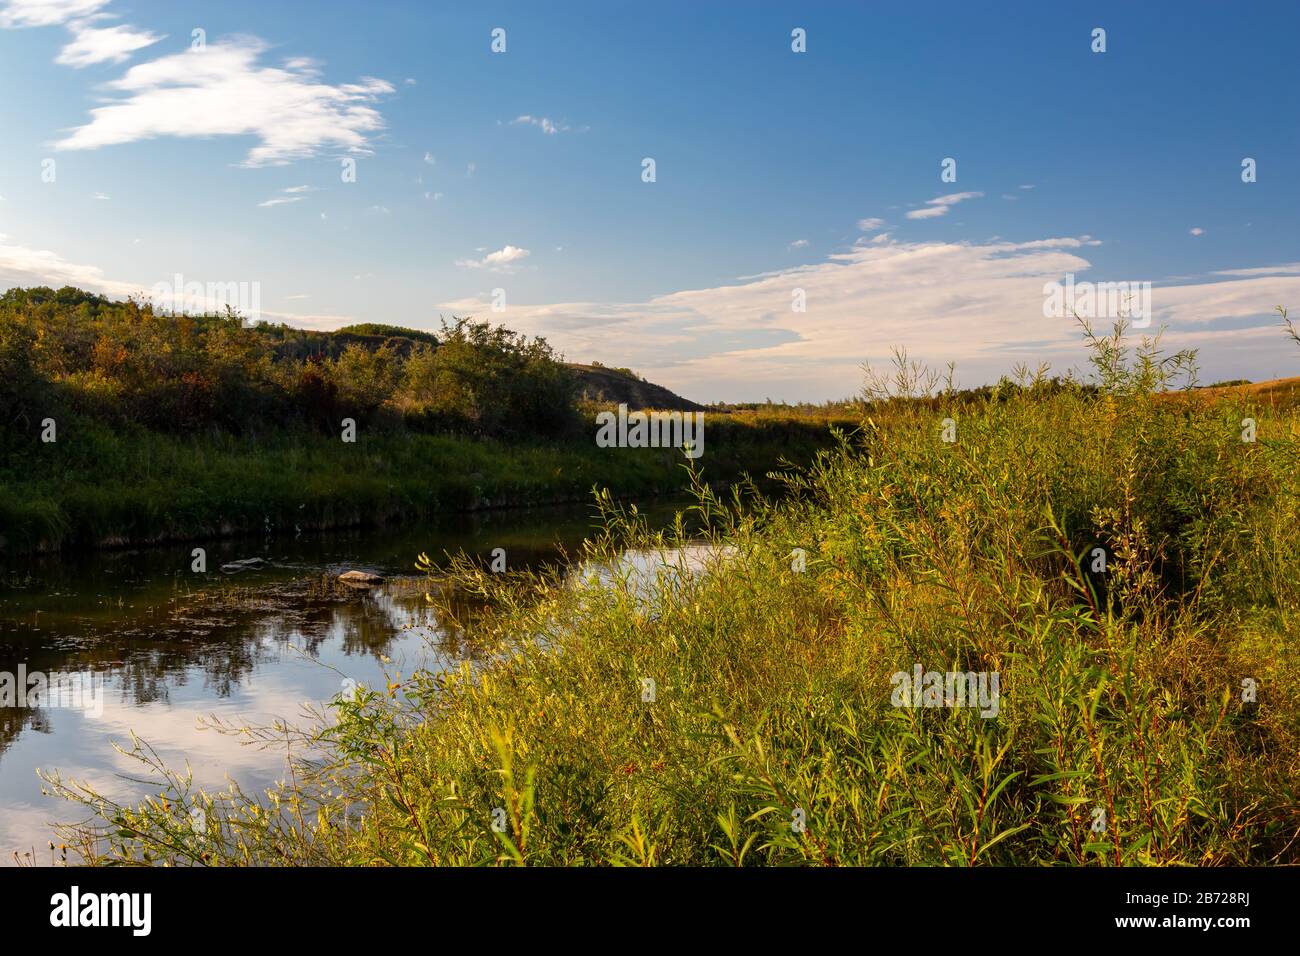 Un flusso tranquillo e pacifico che scorre attraverso una valle nella campagna rurale lato delle praterie Saskatchewan in Canada con il cielo che si riflette nell'acqua Foto Stock